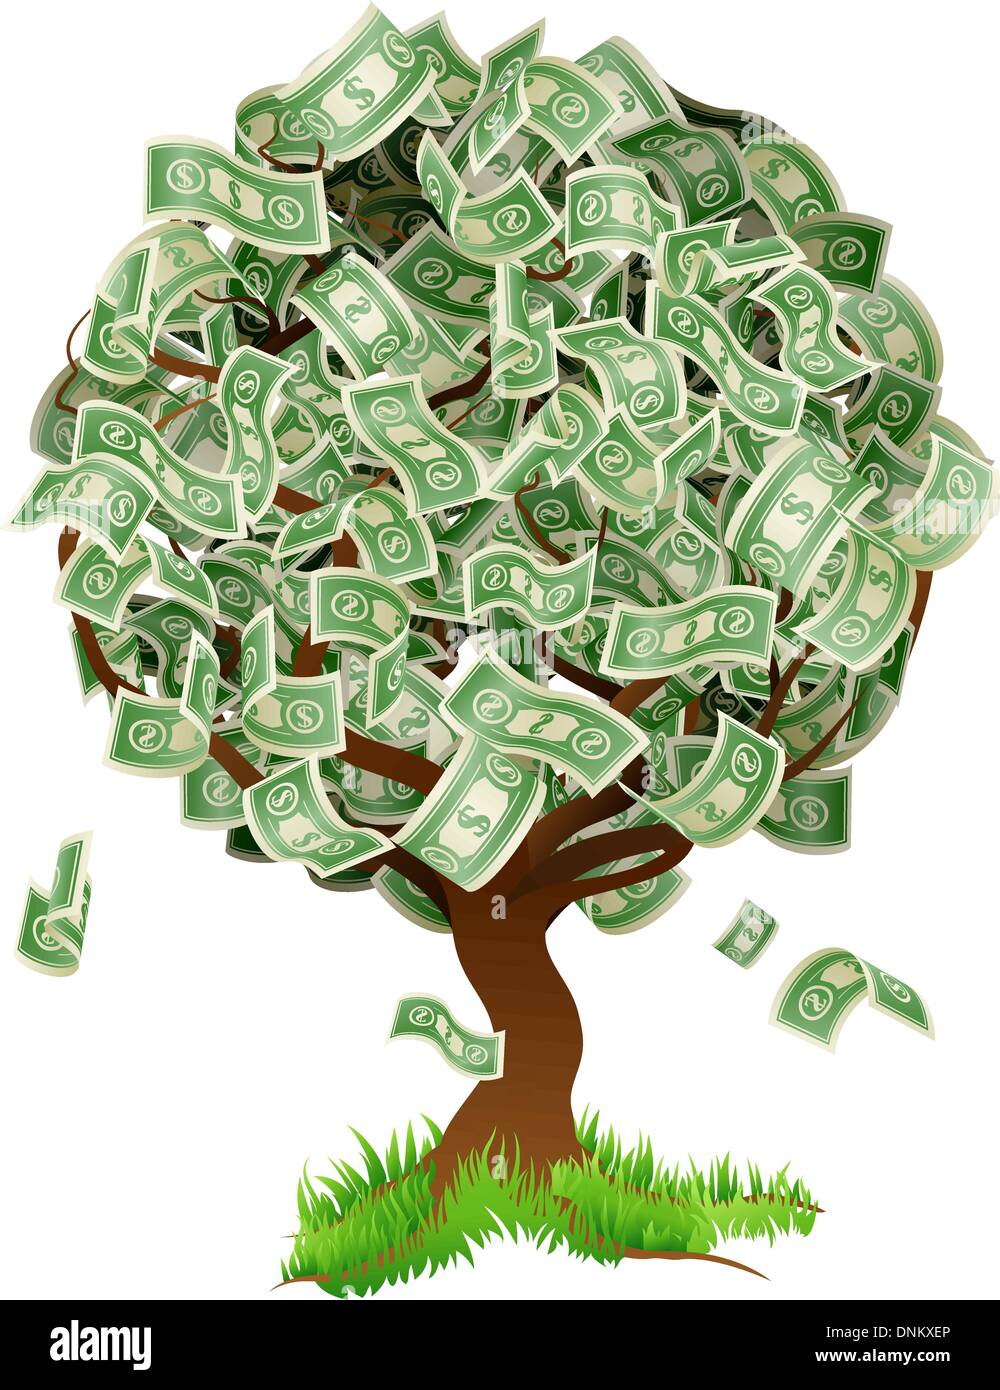 Une illustration conceptuelle d'un arbre qui pousse l'argent sous forme de billets. Concept pour le profit ou la croissance économique, qui gagne en Illustration de Vecteur